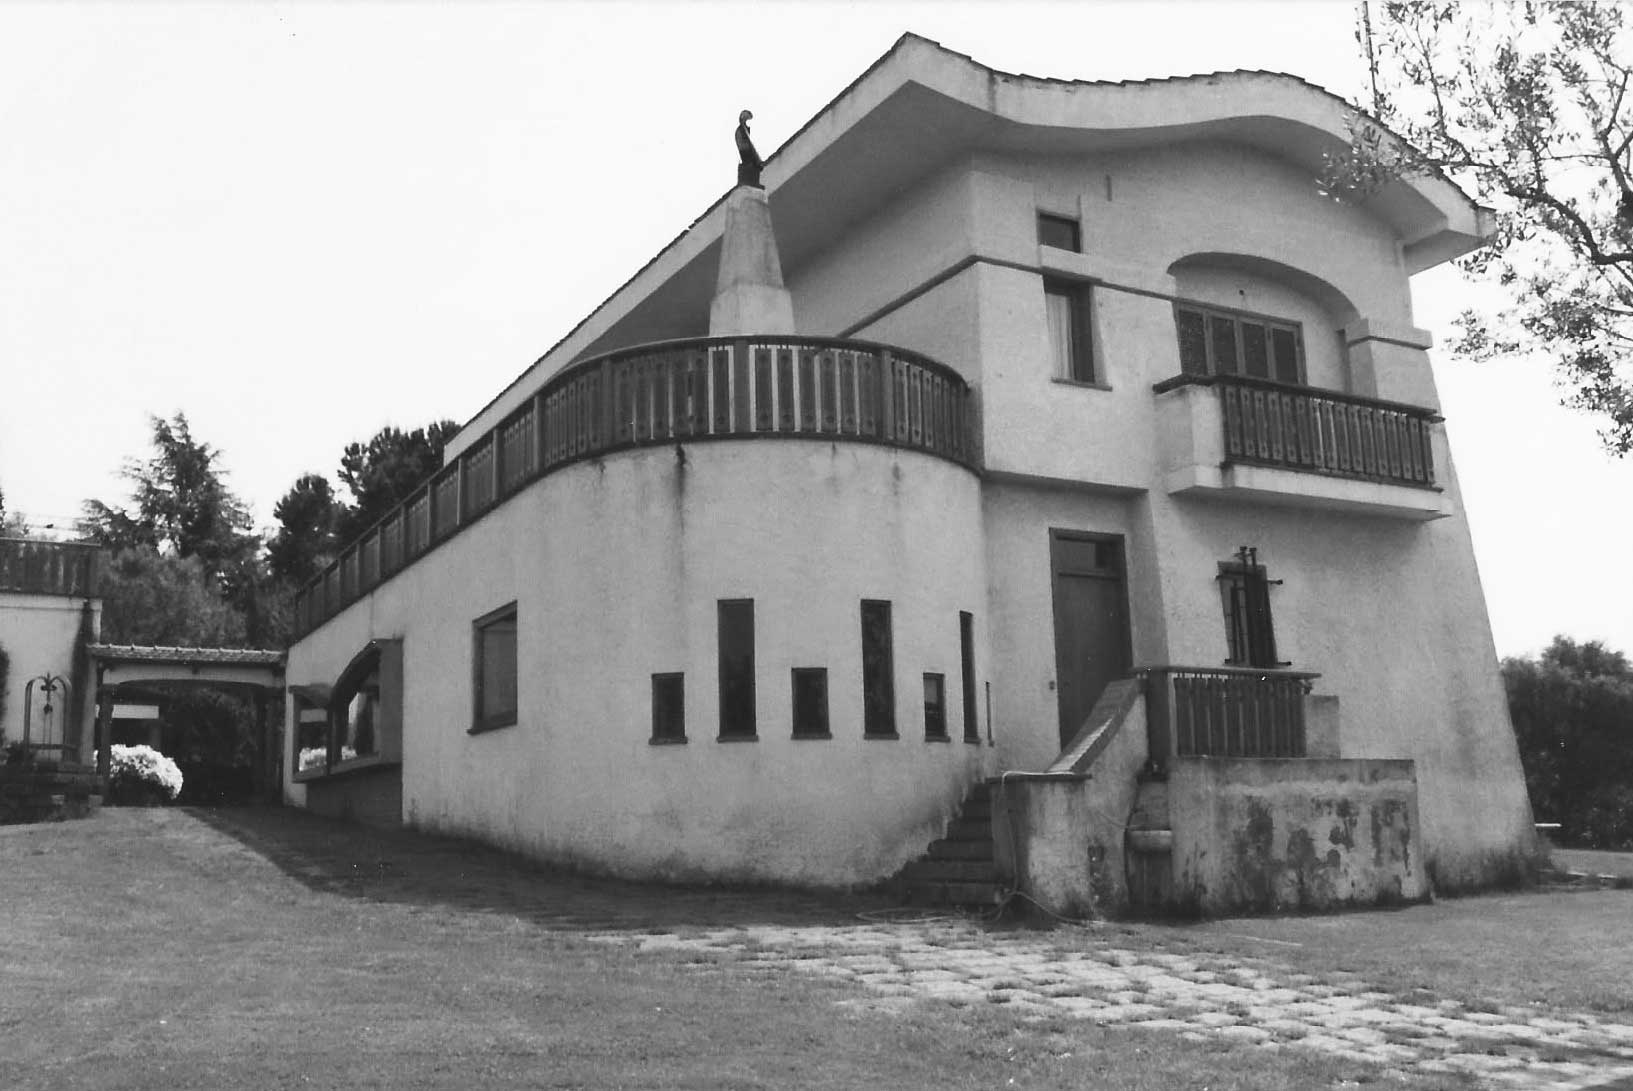 5 - Villa unifamiliare in via Quarto Grotte, Albano Laziale (RM) - Vista esterna